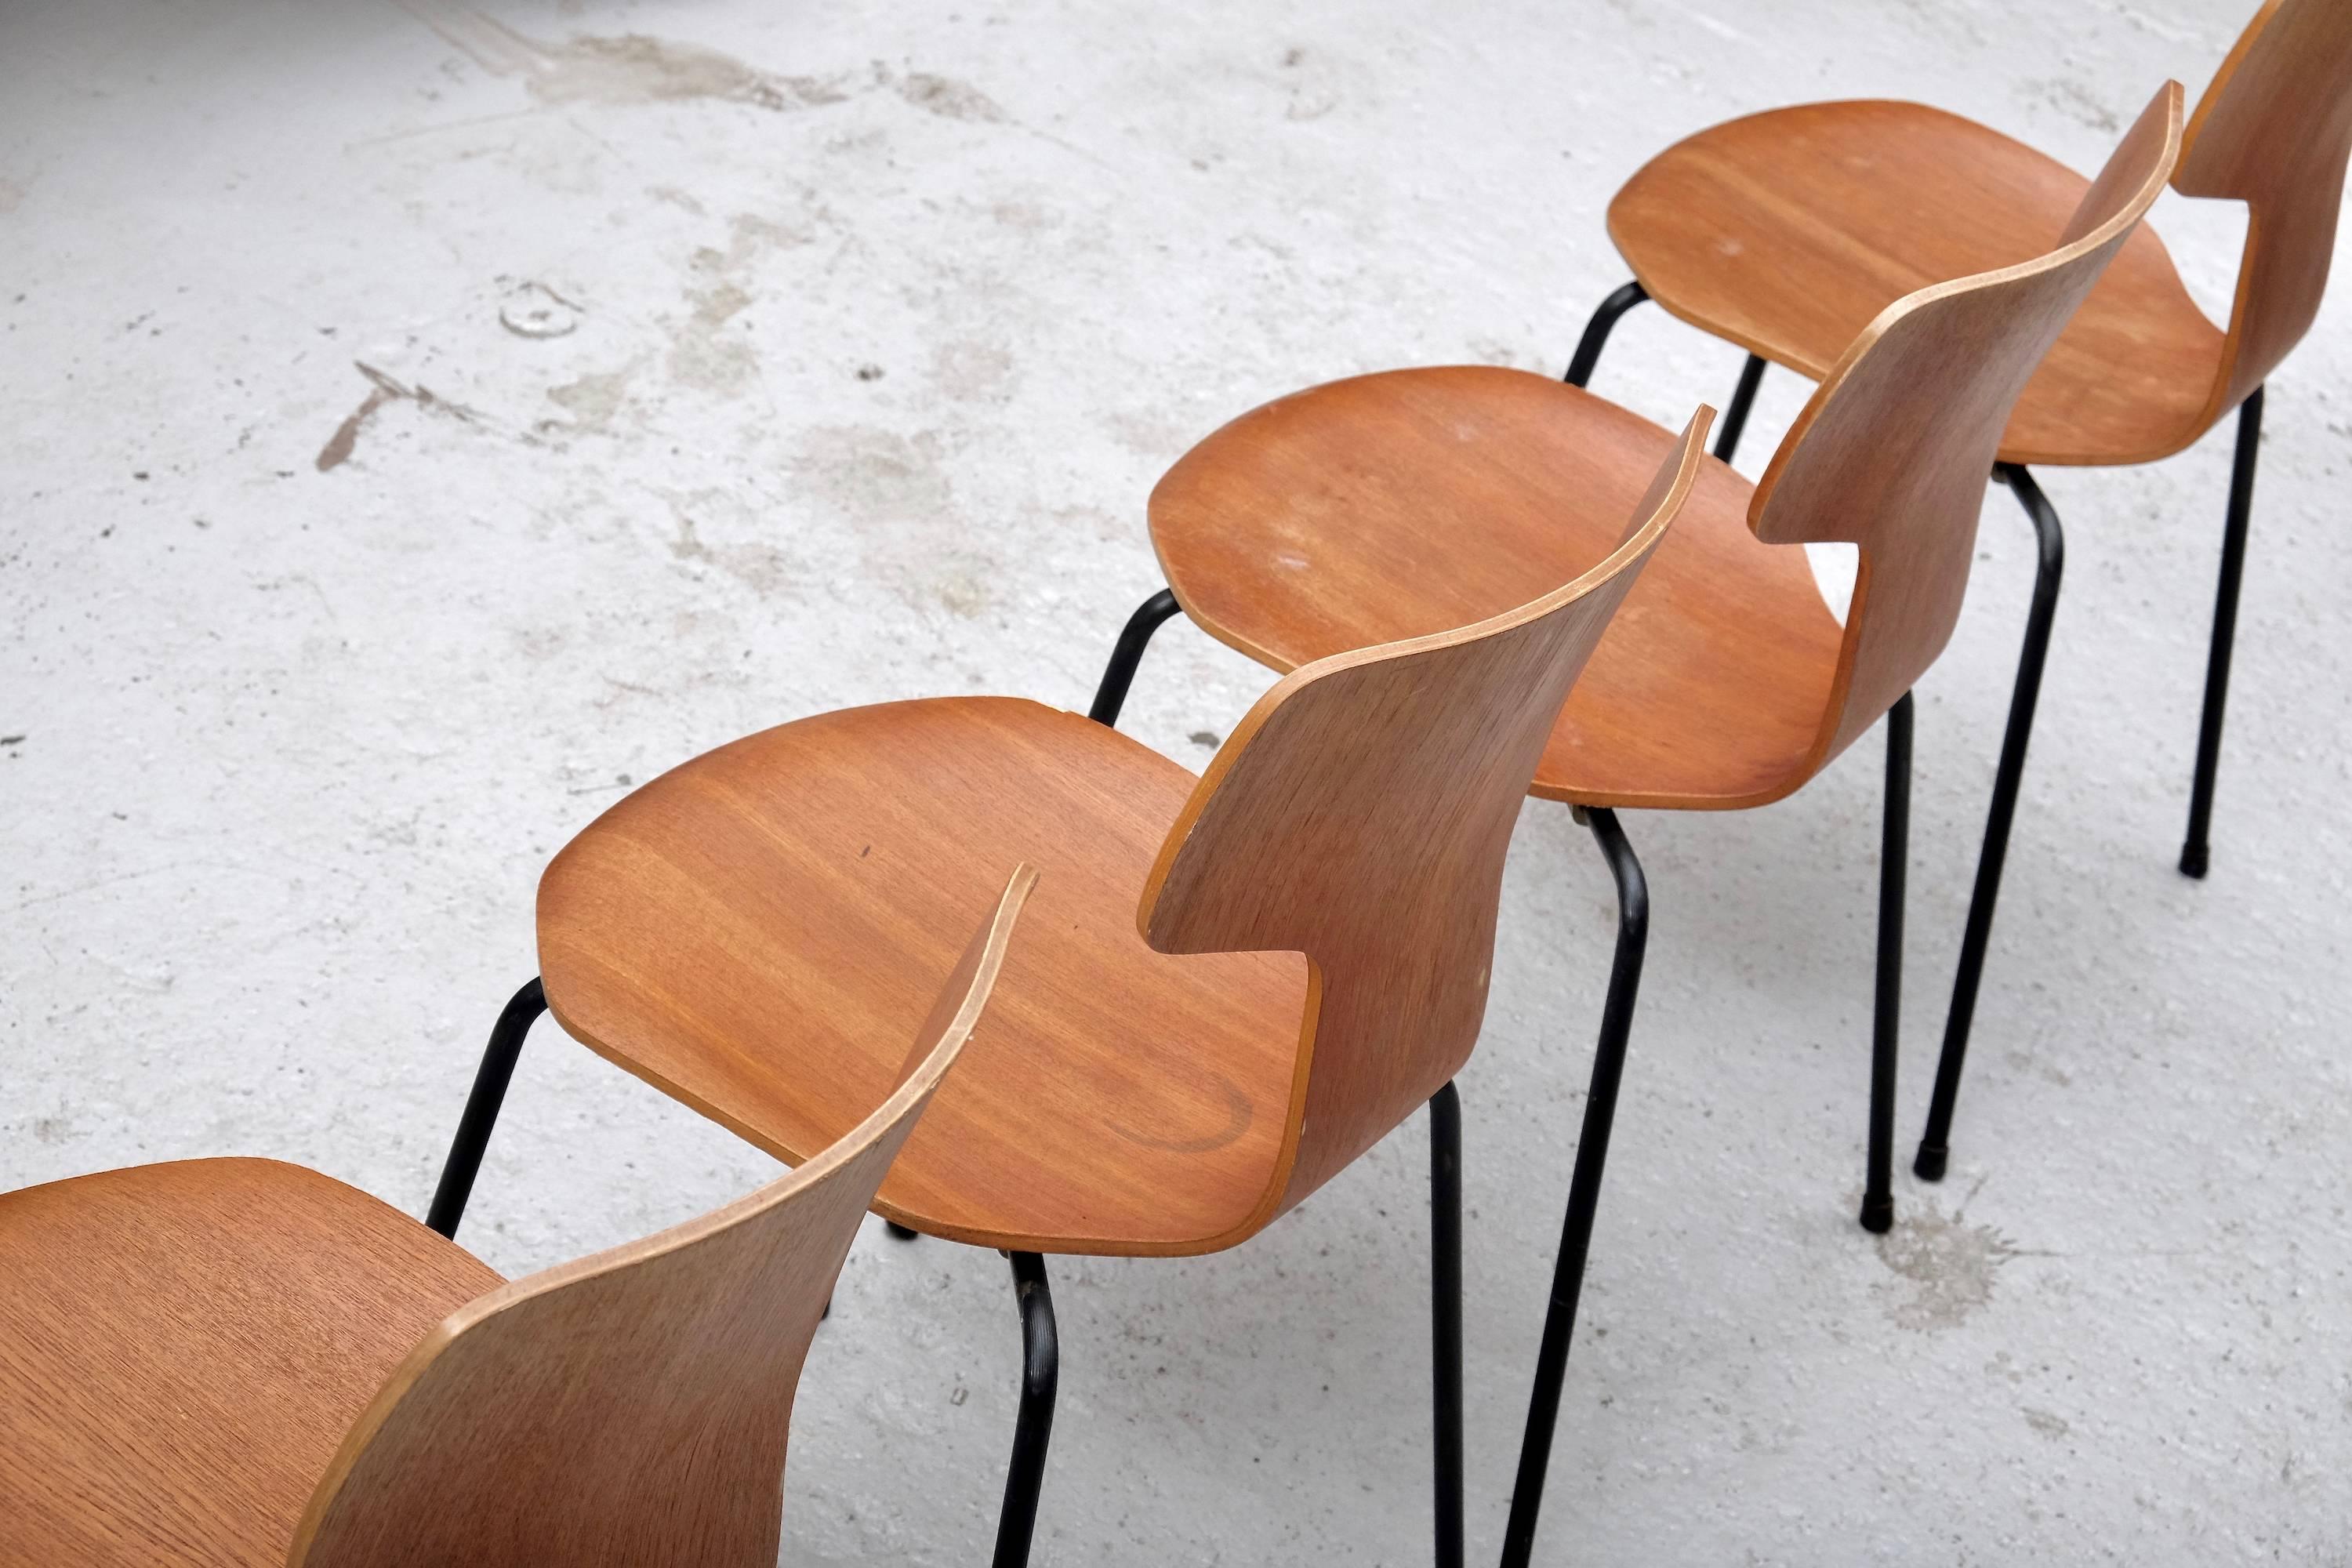 Mid-20th Century Model 3103 Teak Hammer Chairs by Arne Jacobsen for Fritz Hansen, 1960s